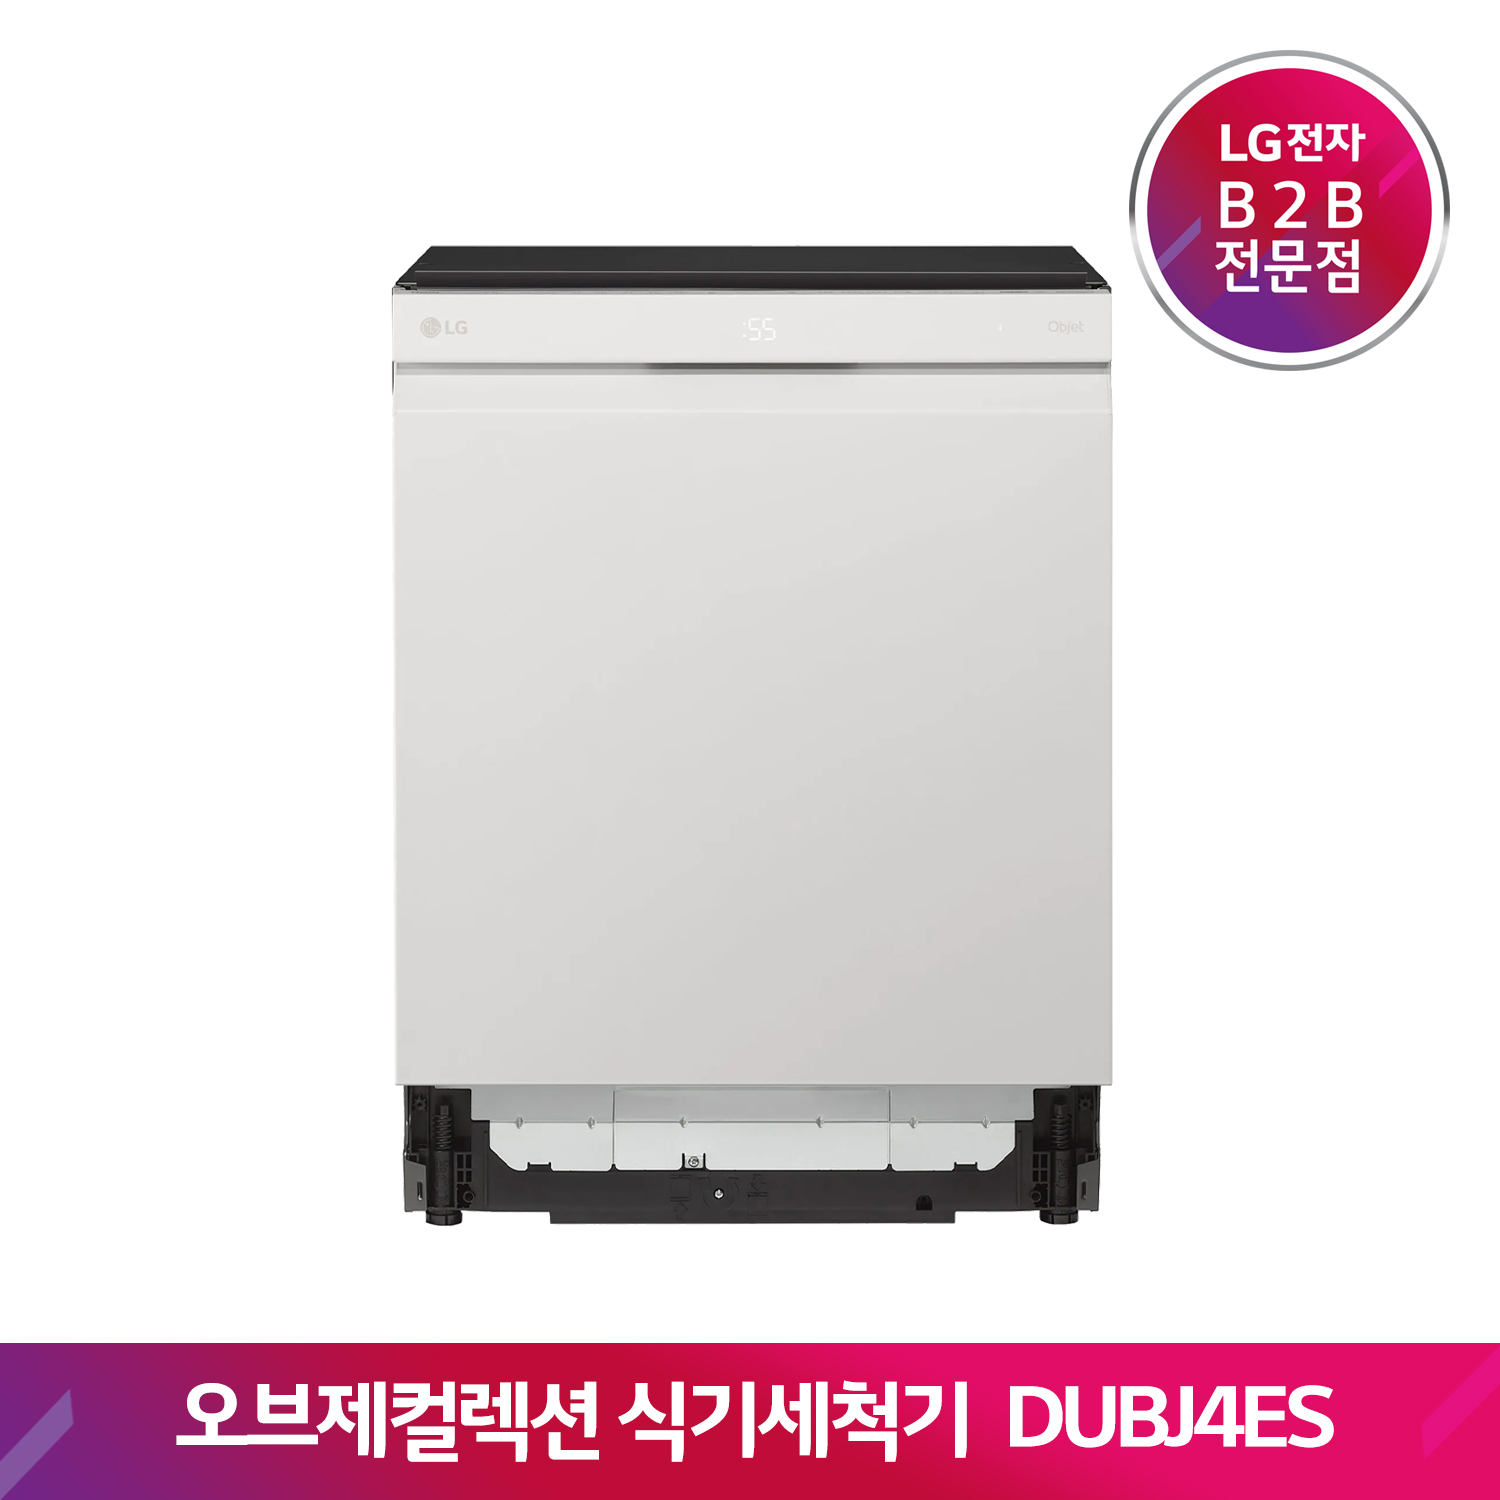 LG DIOS 식기세척기 오브제컬렉션 DUBJ4ES(베이지)[6 빌트인